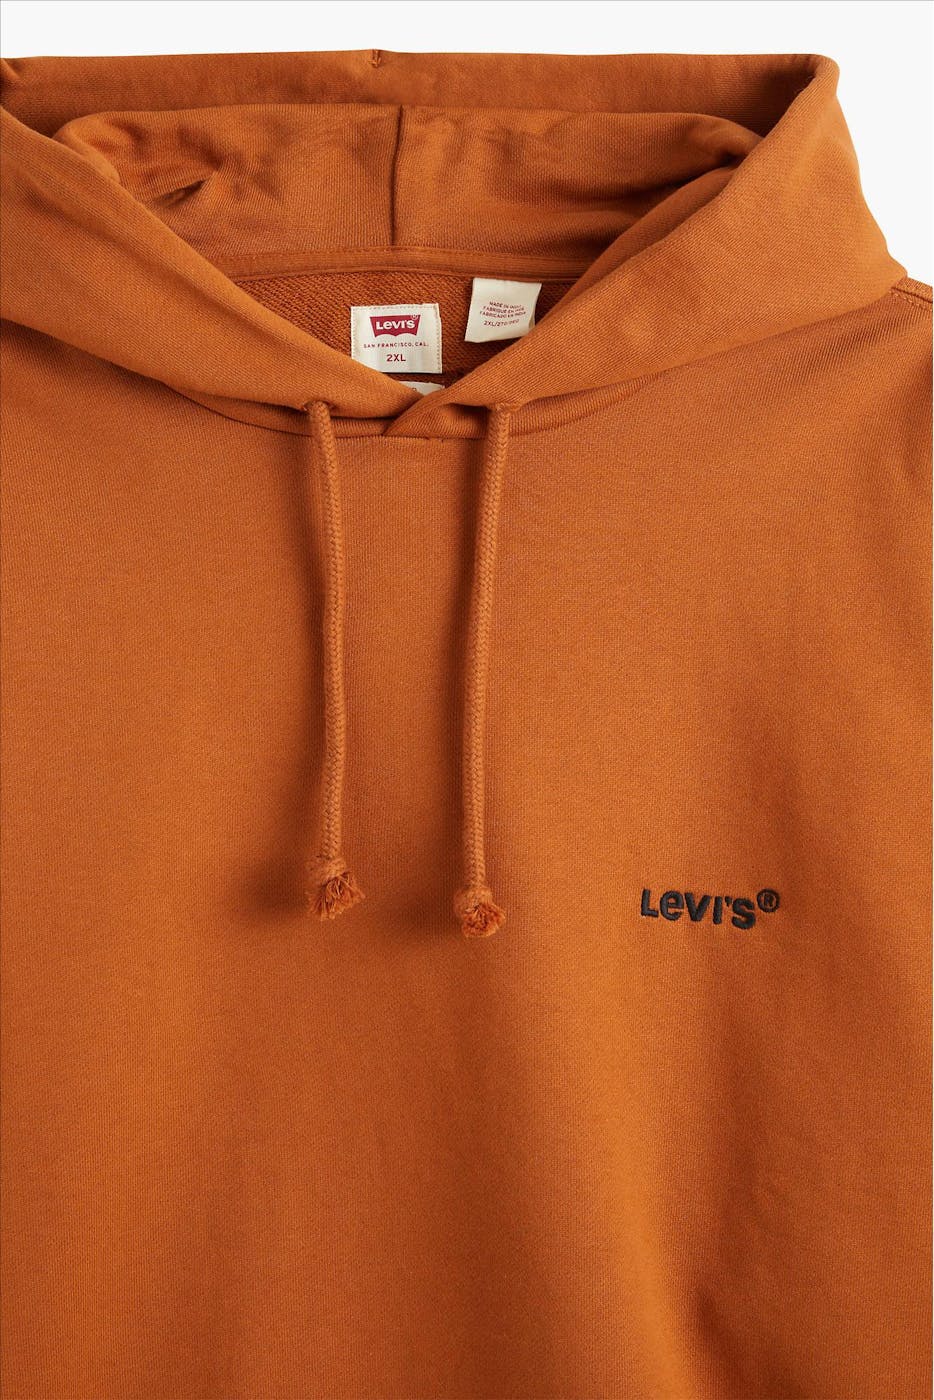 Levi's - Cognac Red Tab Sweats hoodie